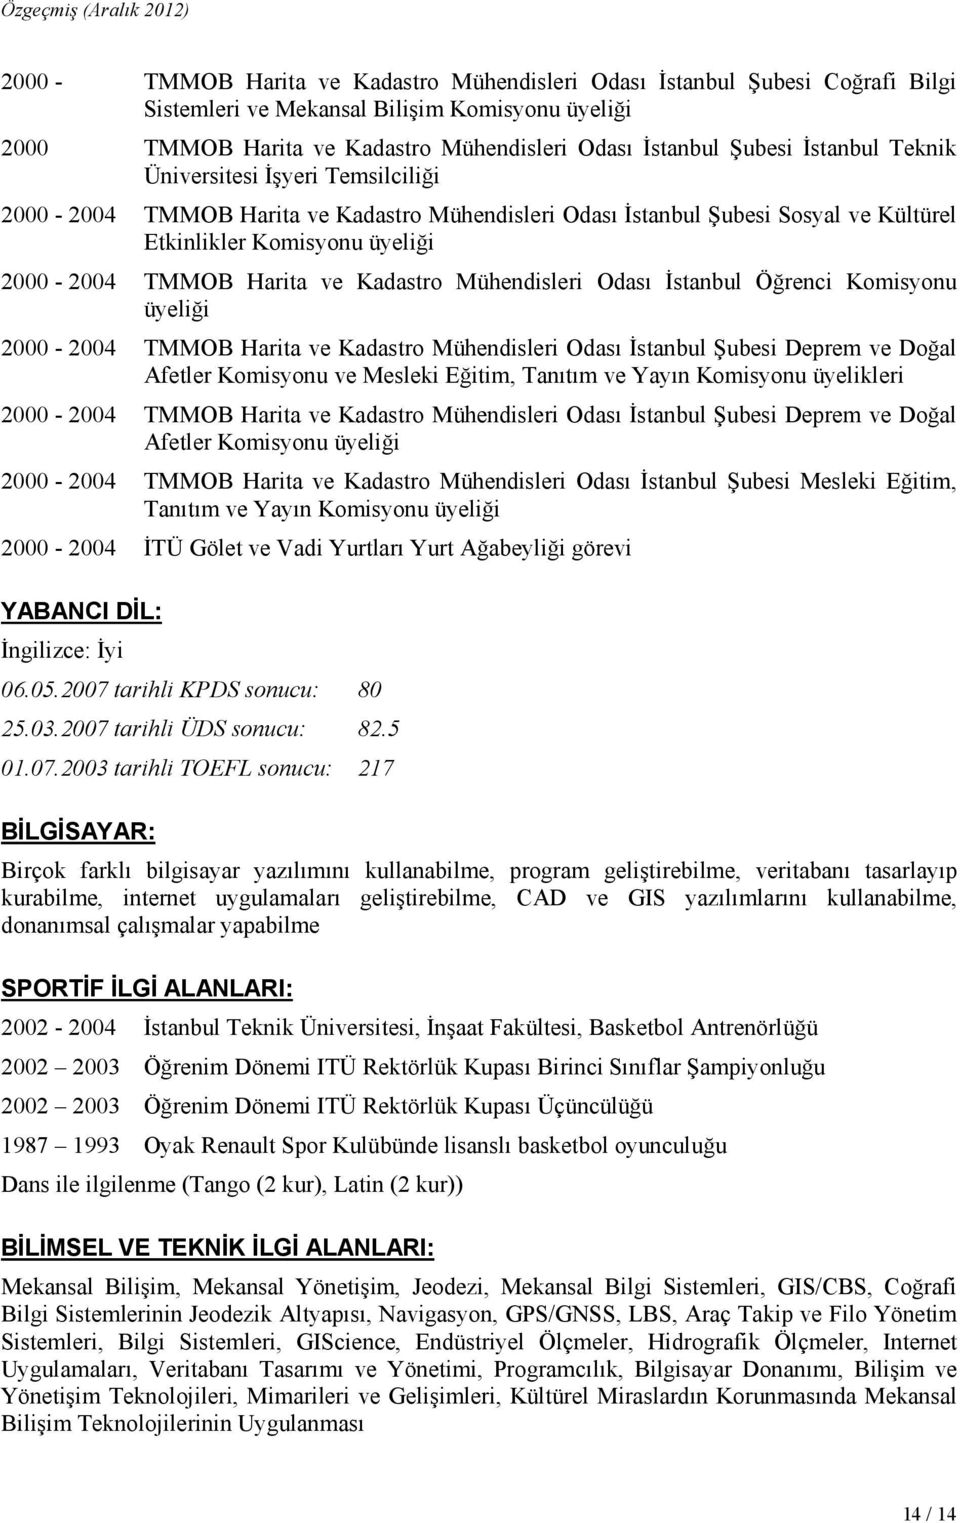 Kadastro Mühendisleri Odası Đstanbul Öğrenci Komisyonu üyeliği 2000-2004 TMMOB Harita ve Kadastro Mühendisleri Odası Đstanbul Şubesi Deprem ve Doğal Afetler Komisyonu ve Mesleki Eğitim, Tanıtım ve